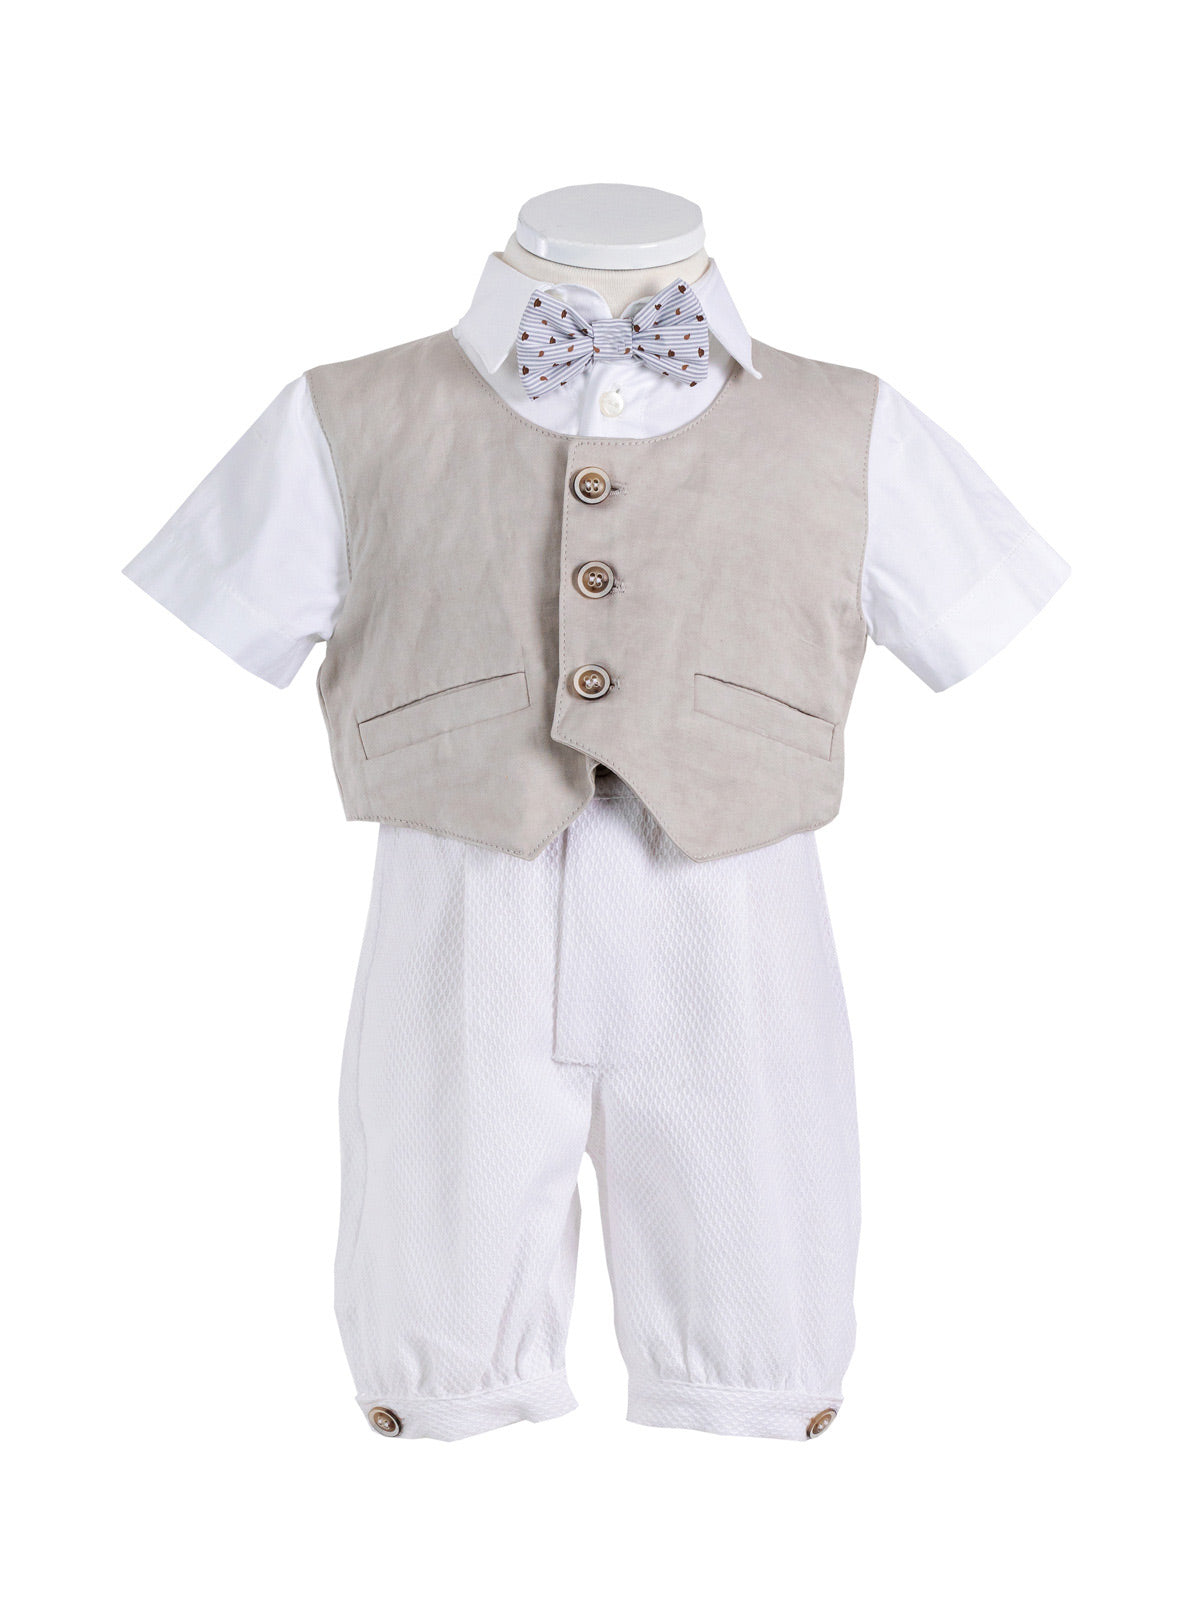 Baby cotton suit set for boy 3pcs - SILVESTRO